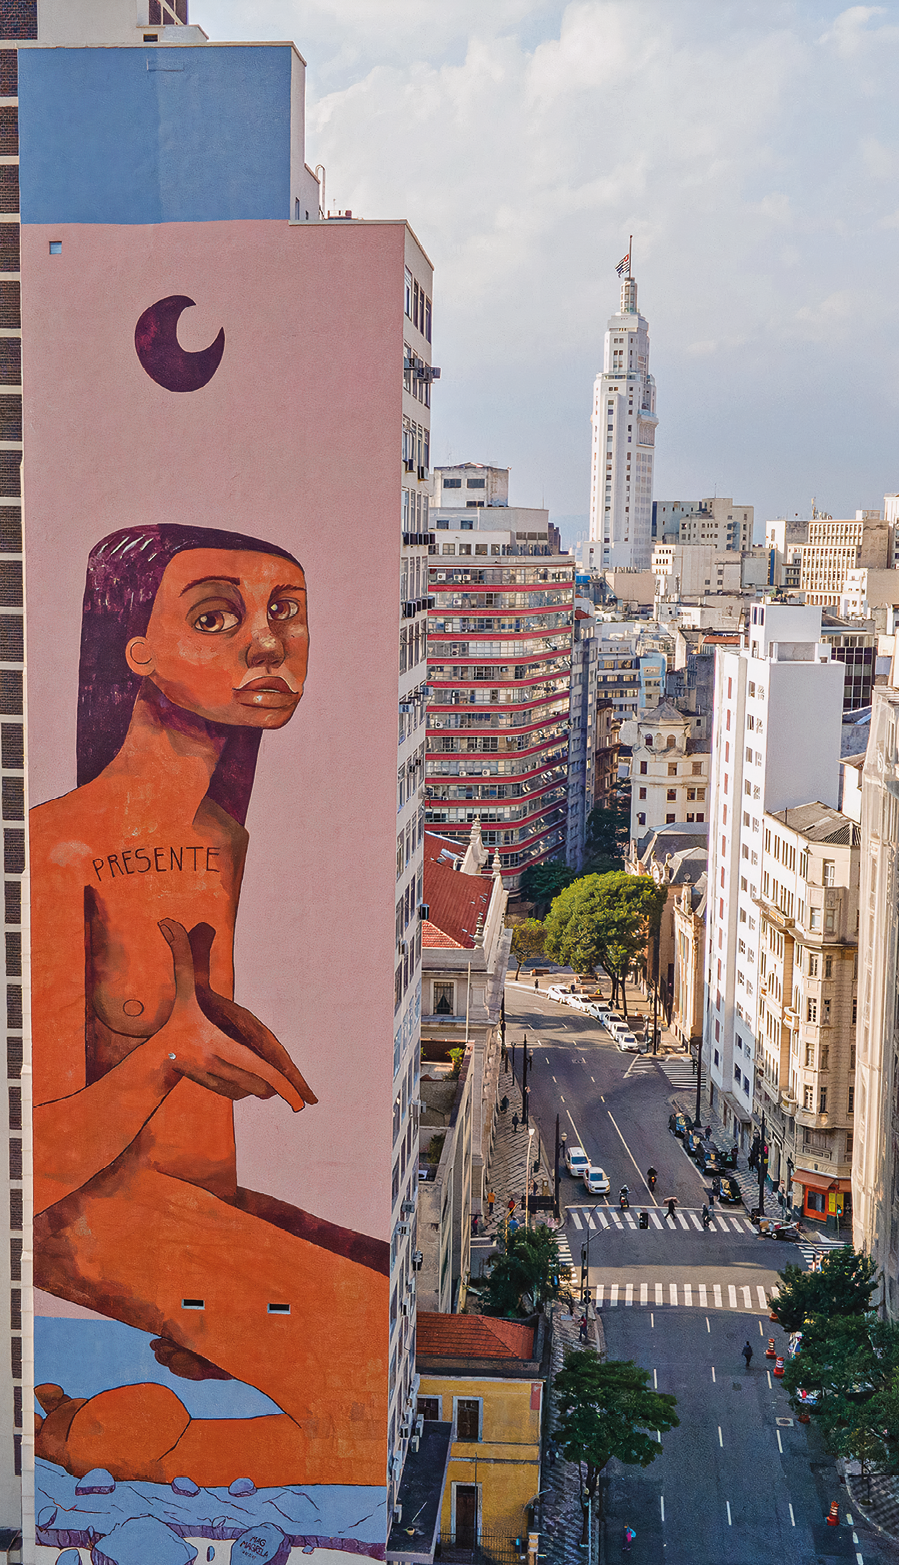 Fotografia. À esquerda, destaque de um edifício com grafite na parede lateral que apresenta o desenho de uma mulher nua sentada sobre as pernas e uma meia-lua na parte superior. À direita, está uma ampla via e prédios.